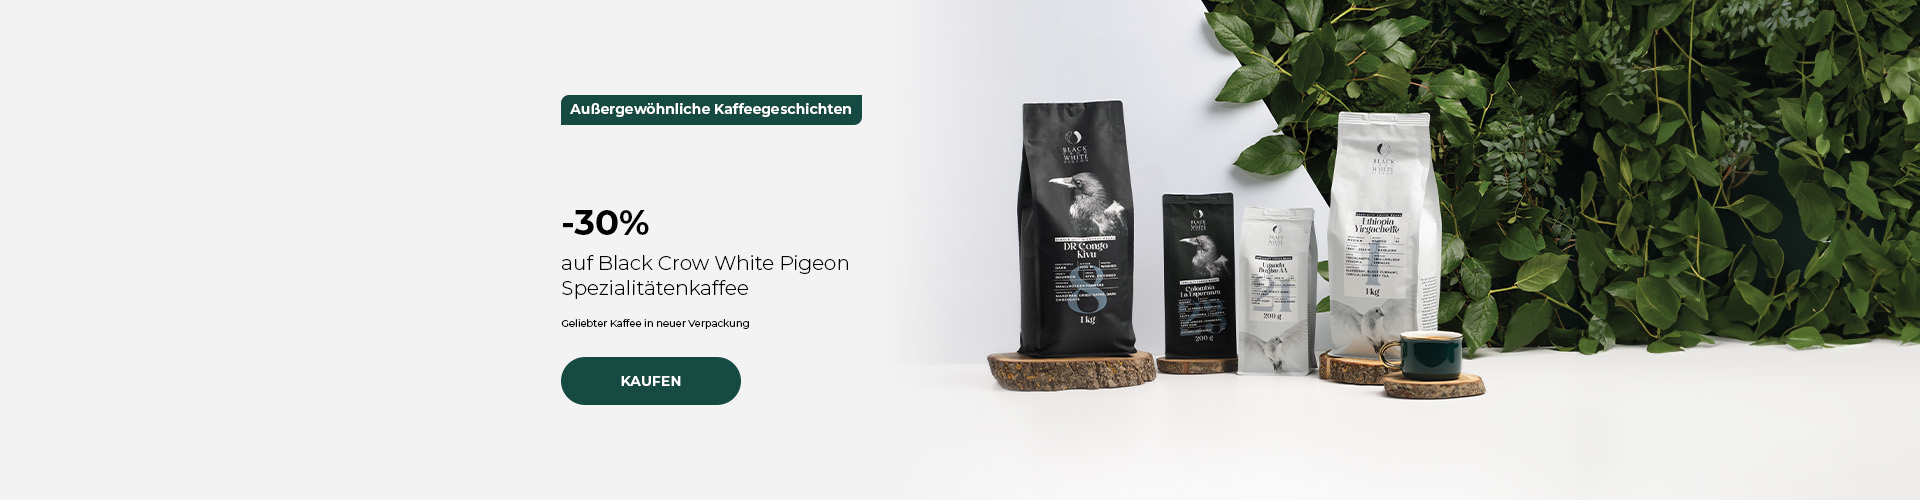 -30% auf Black Crow White Pigeon Spezialitätenkaffee